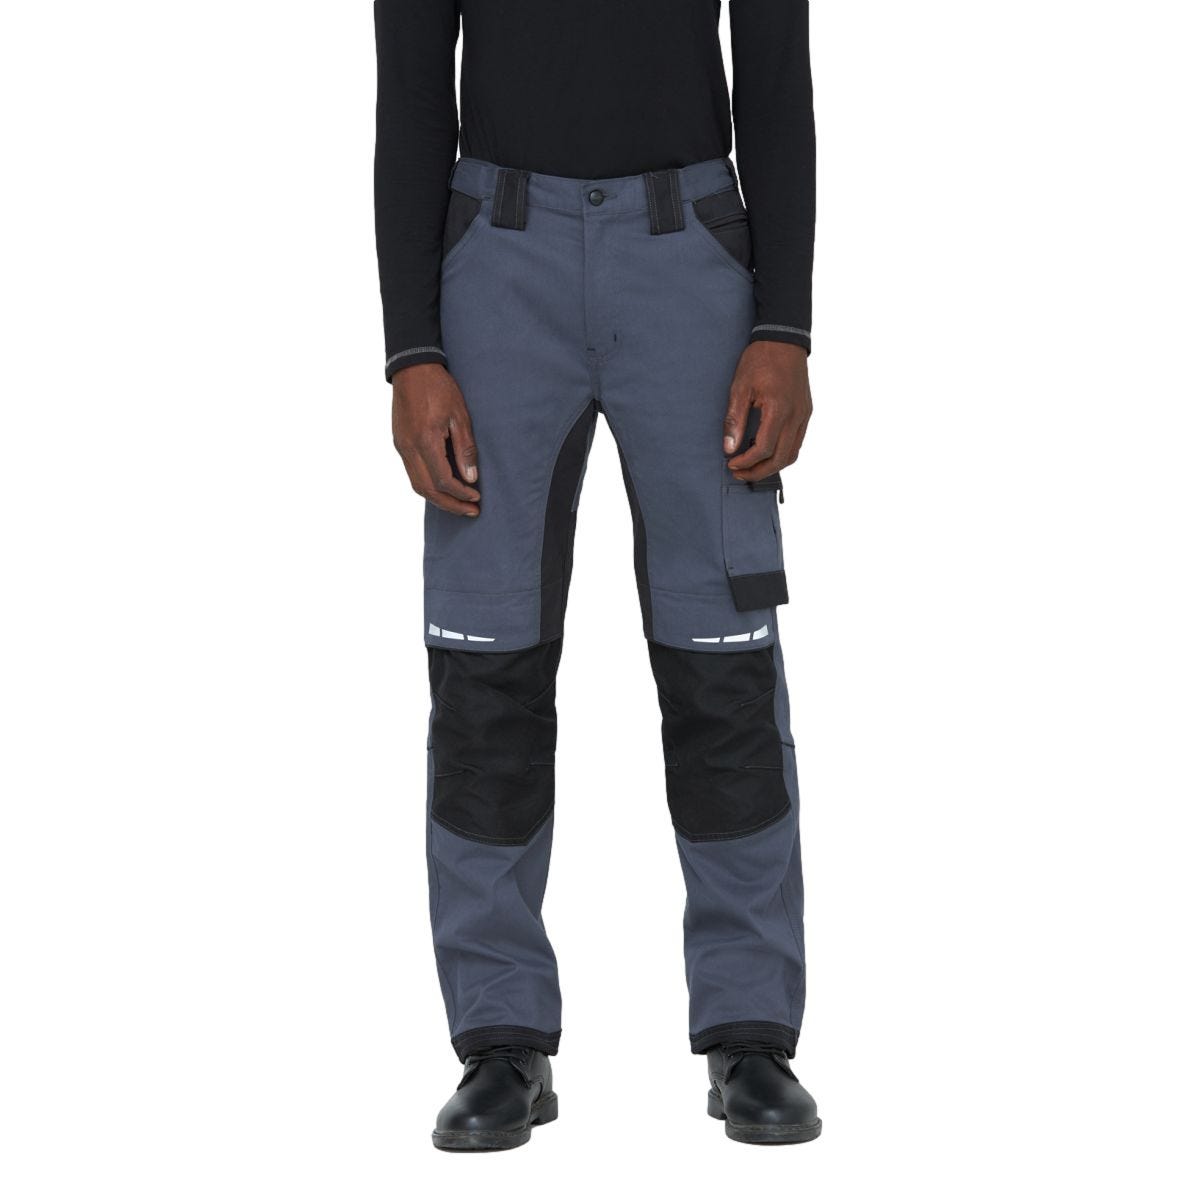 Pantalon de travail GDT Premium gris/noir - Dickies - Taille 48 2